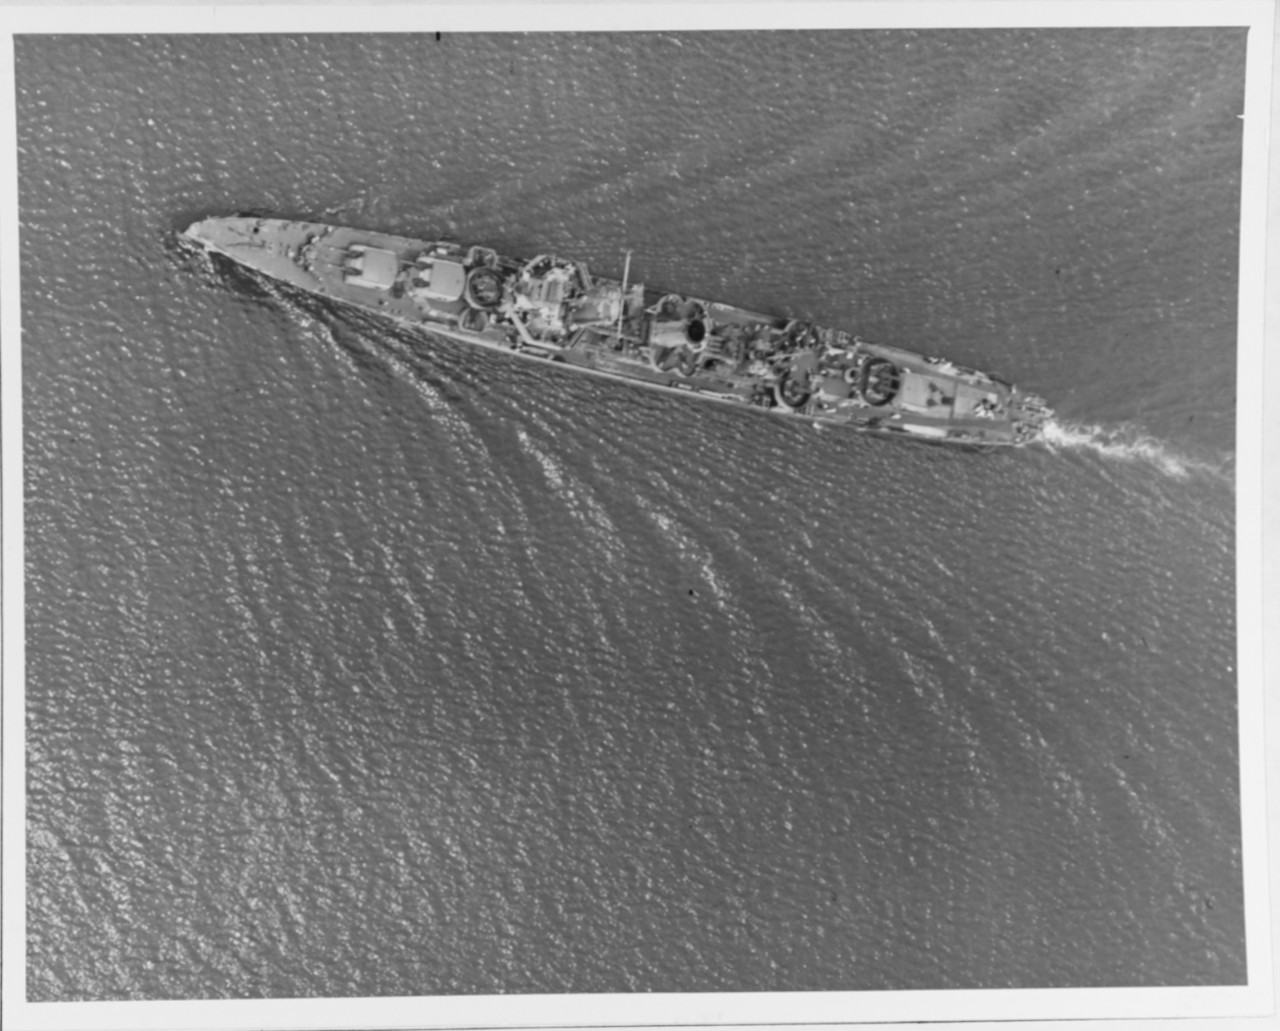 USS MOFFETT (DD-362)